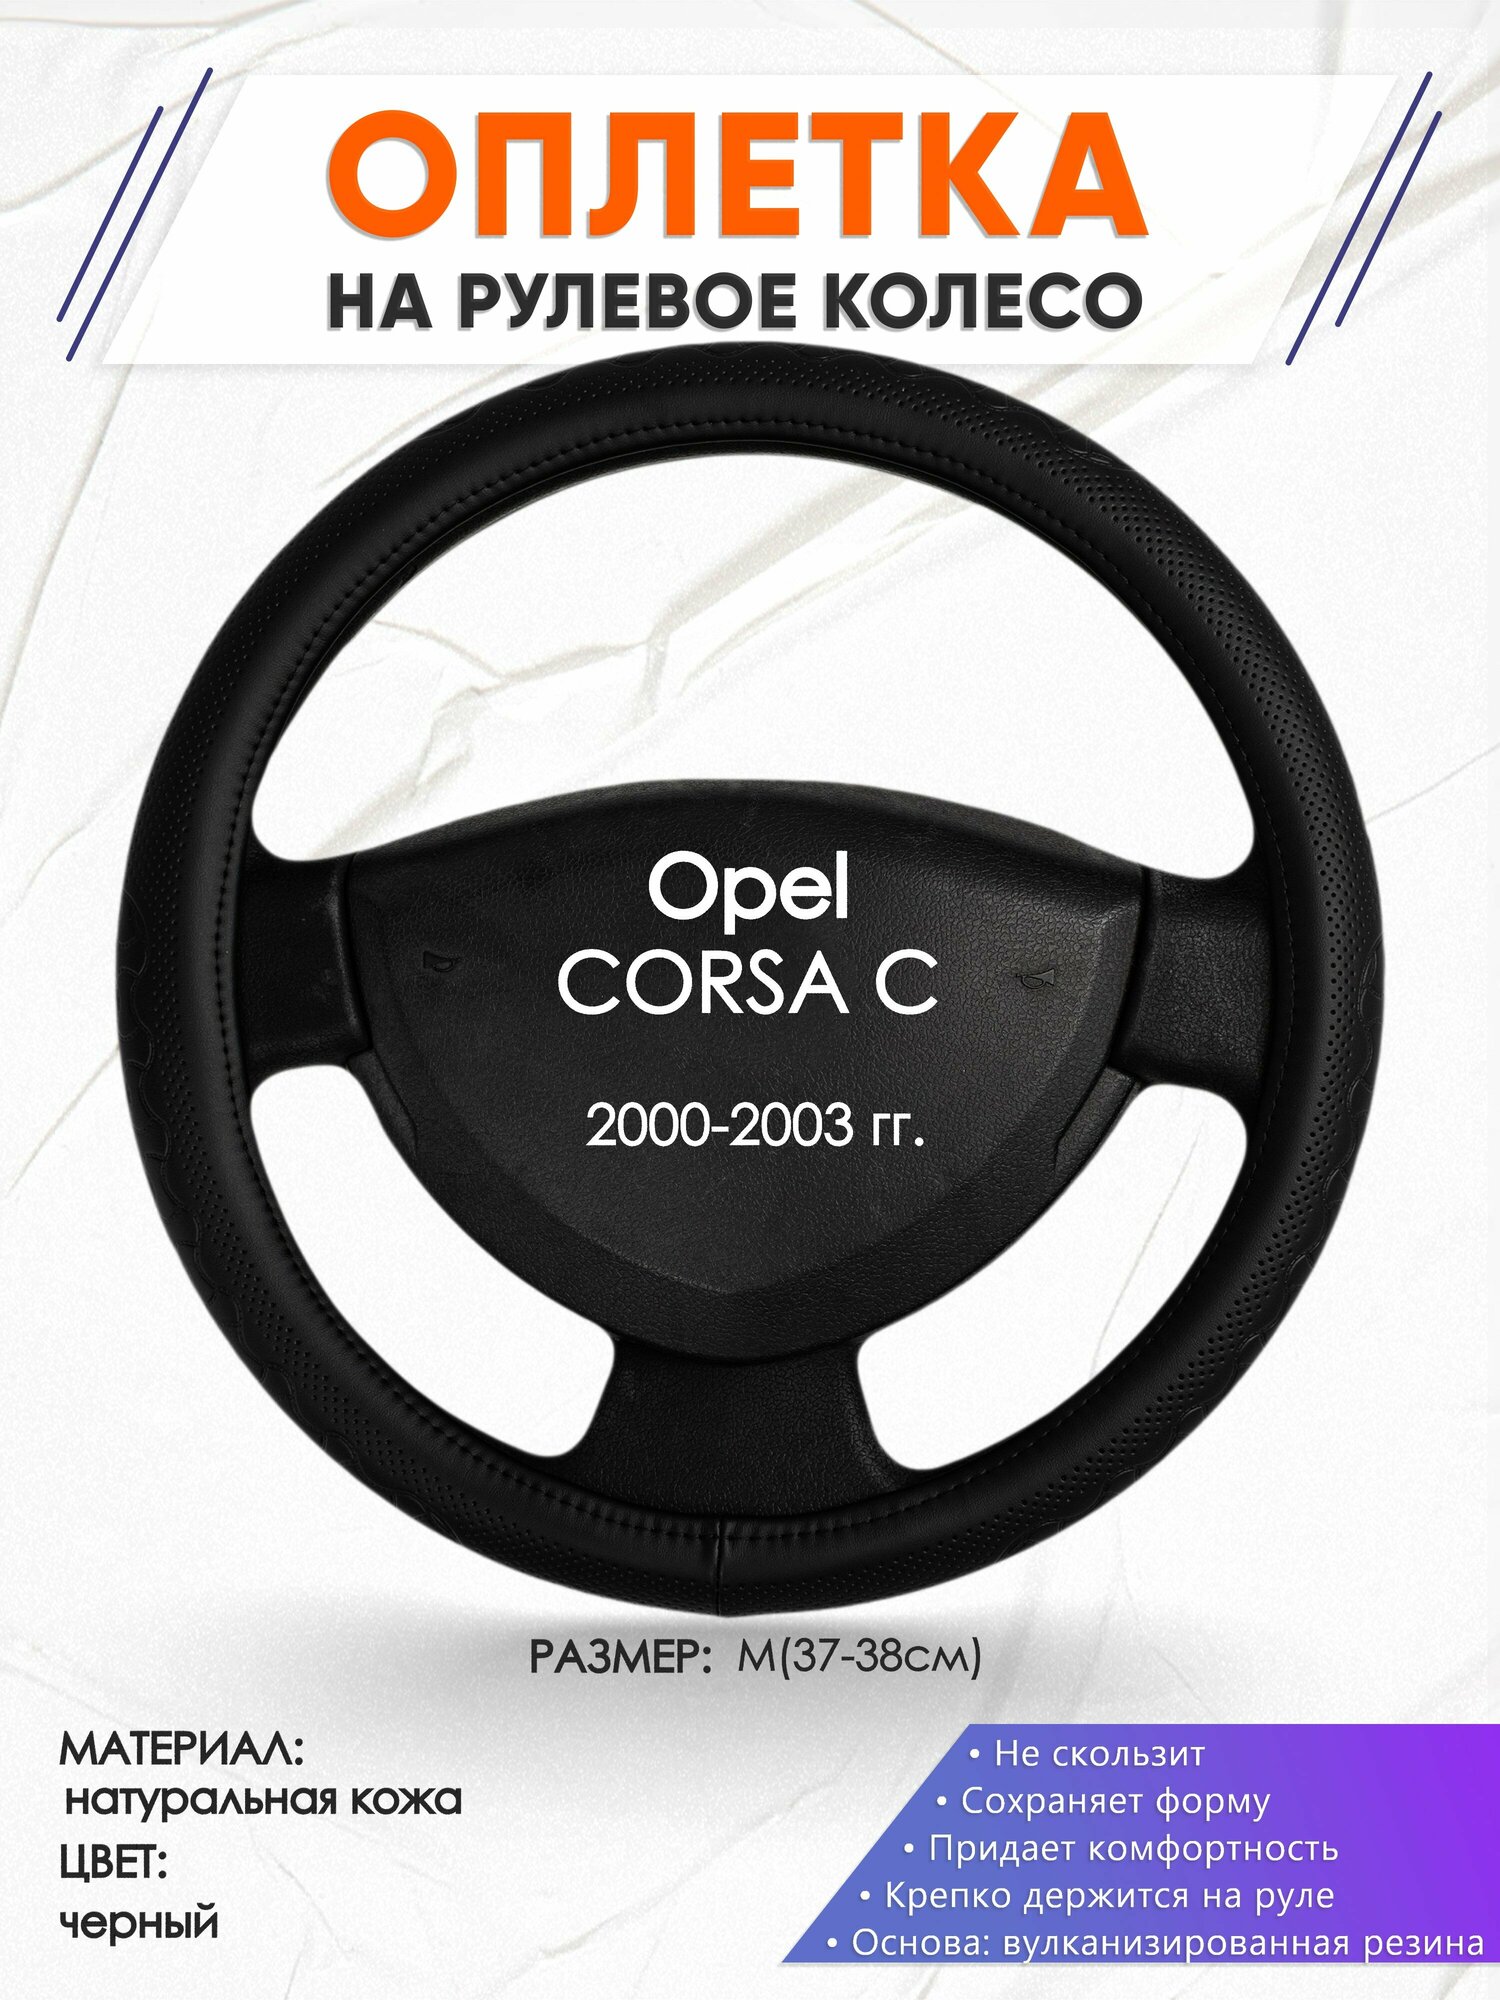 Оплетка наруль для Opel CORSA C(Опель Корса) 2000-2003 годов выпуска размер M(37-38см) Натуральная кожа 90